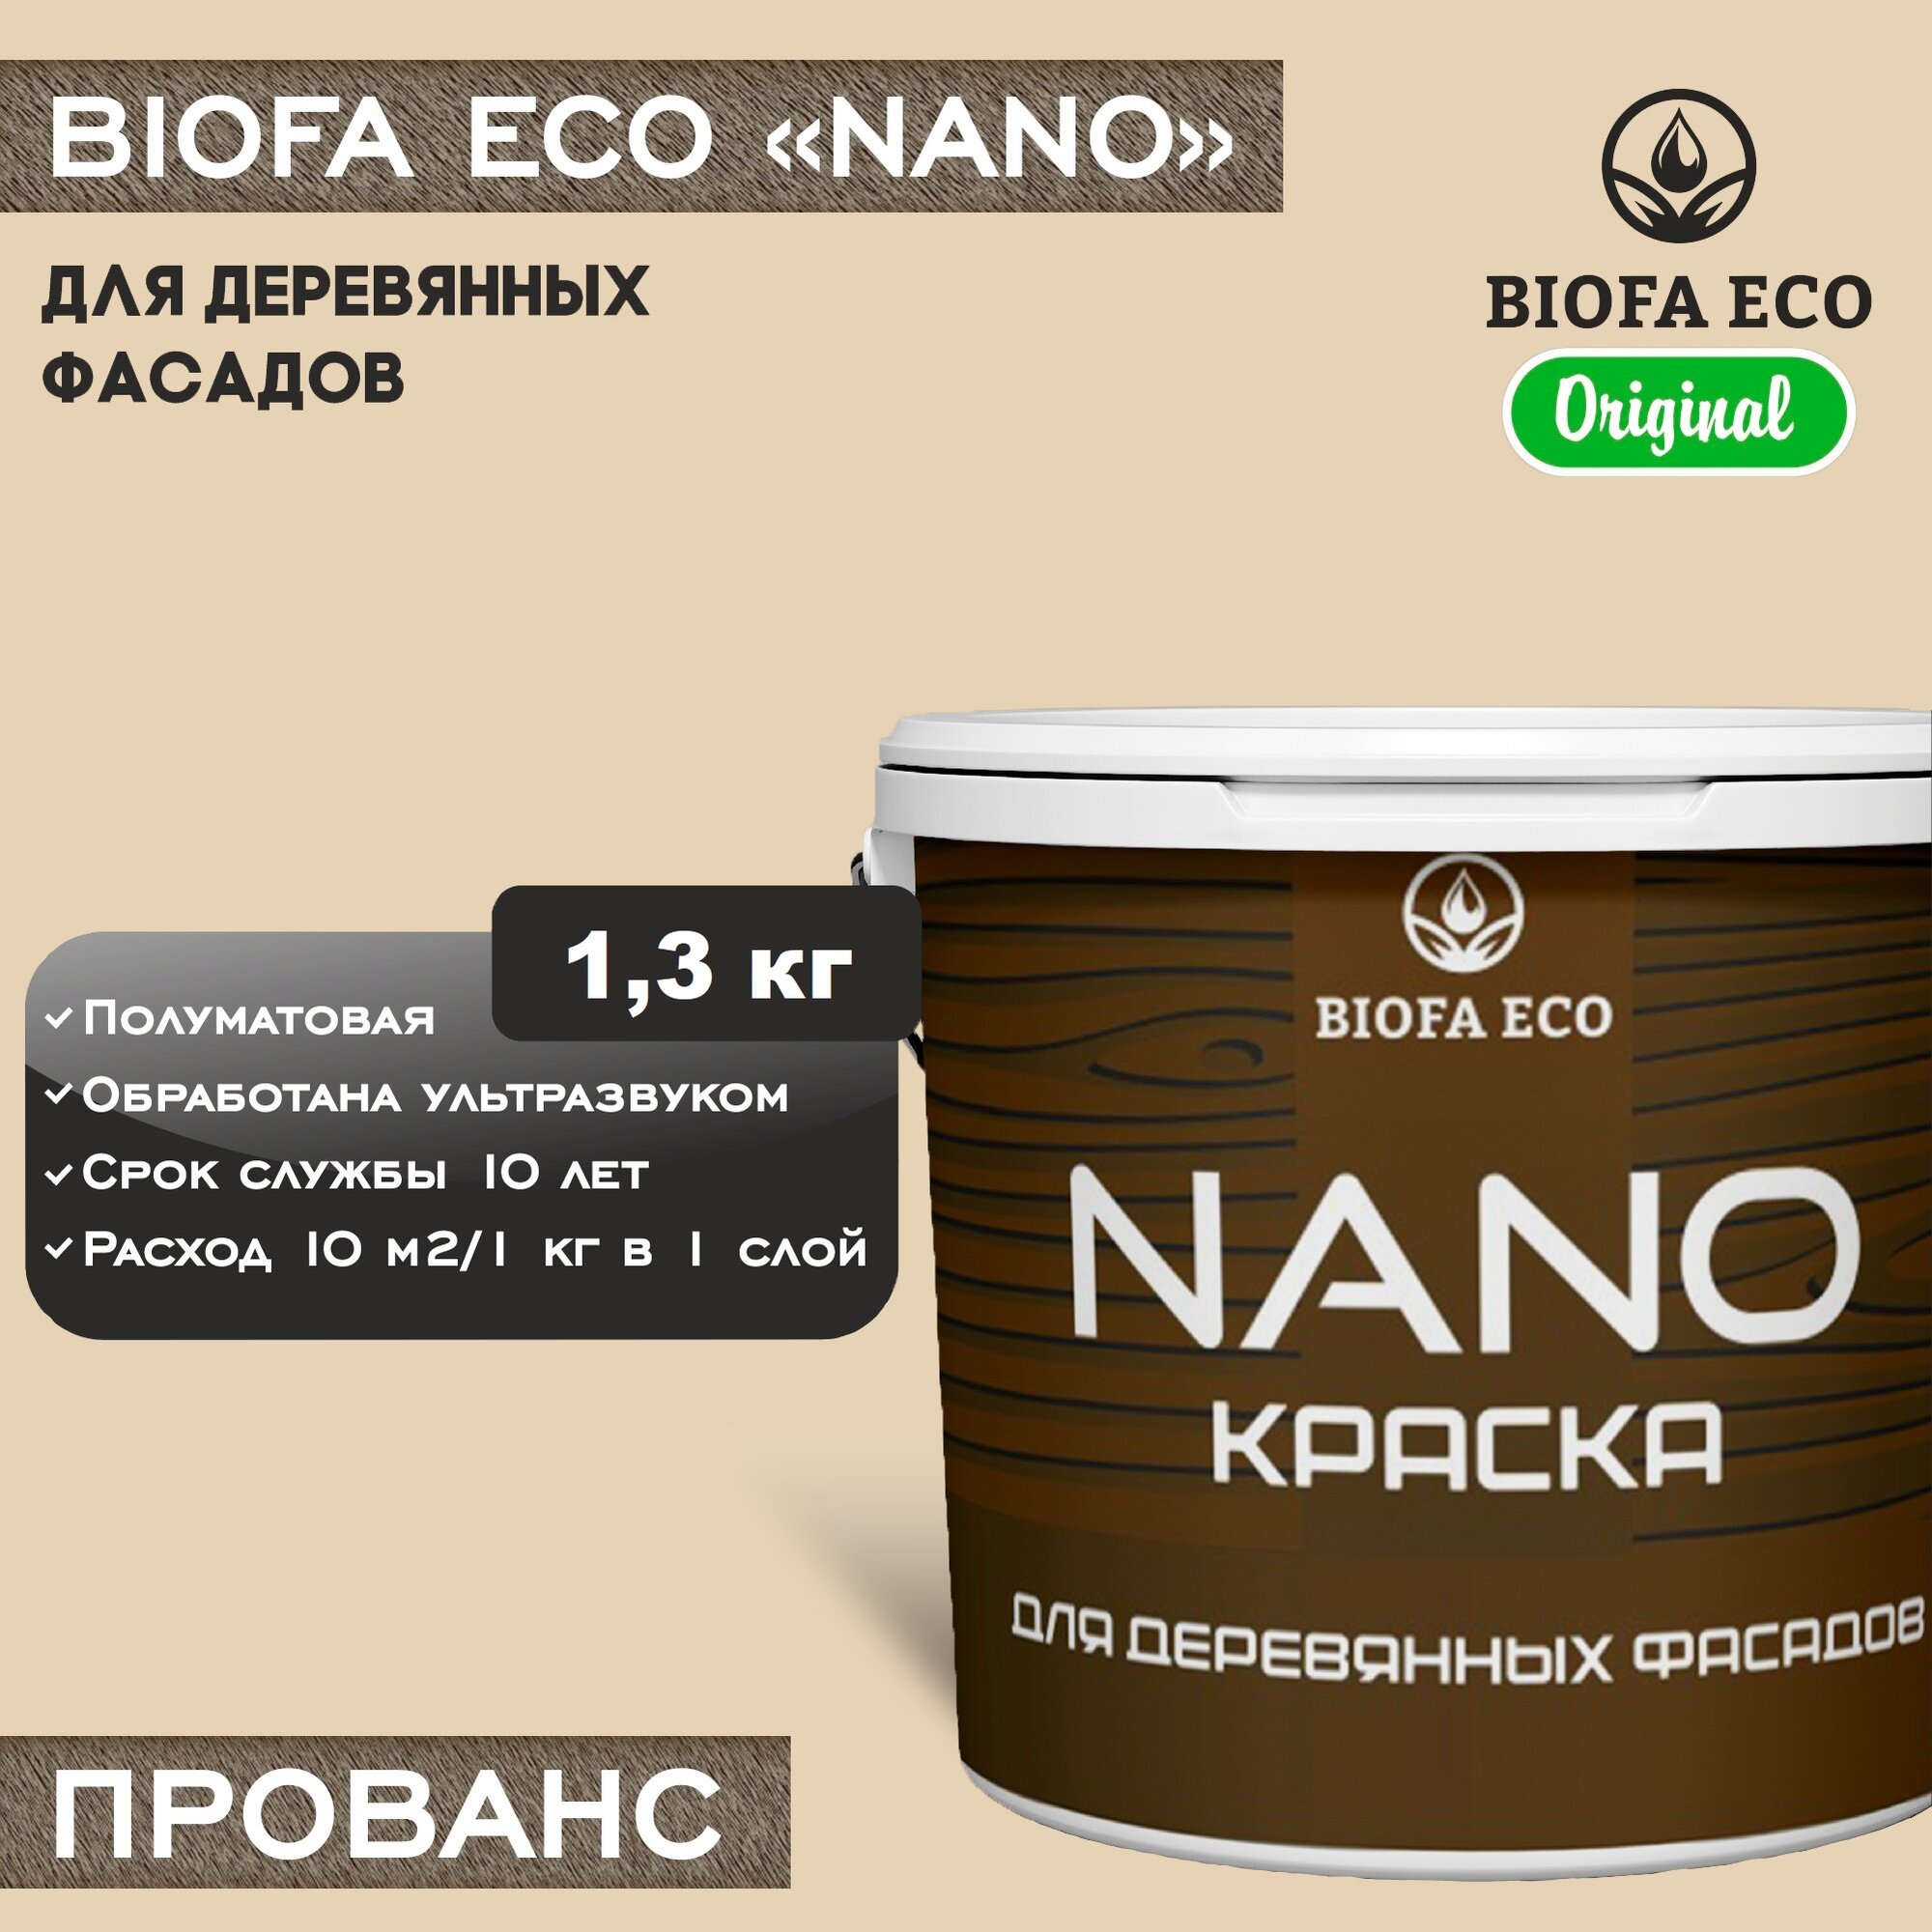 Краска BIOFA ECO NANO для деревянных фасадов, укрывистая, полуматовая, цвет прованс, 1,3 кг